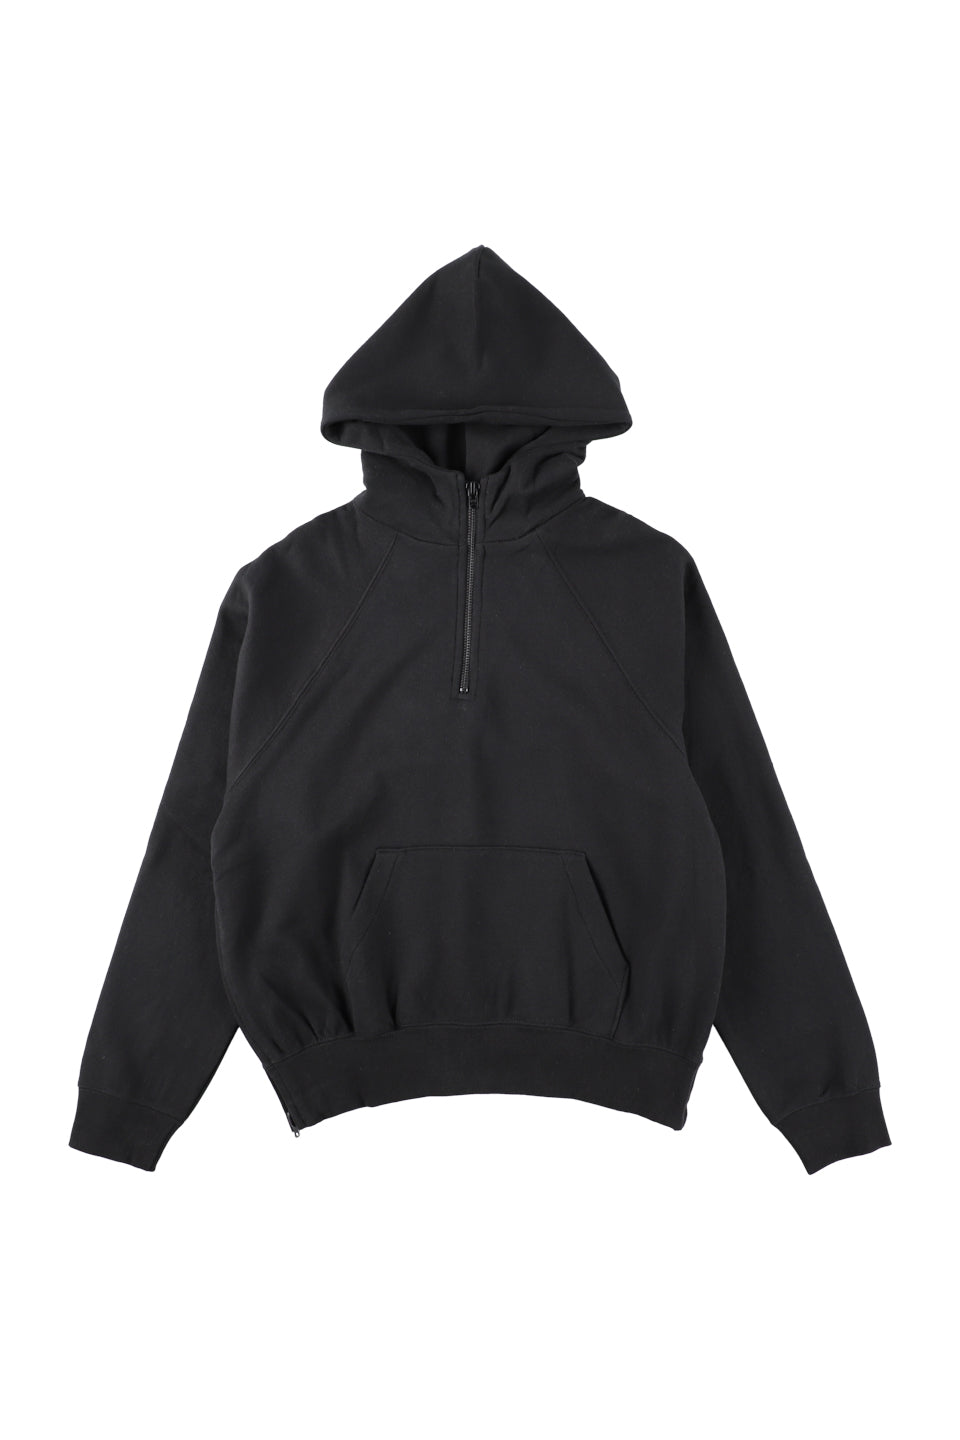 パーカーFOG essentials half zip pullover hoodie - パーカー